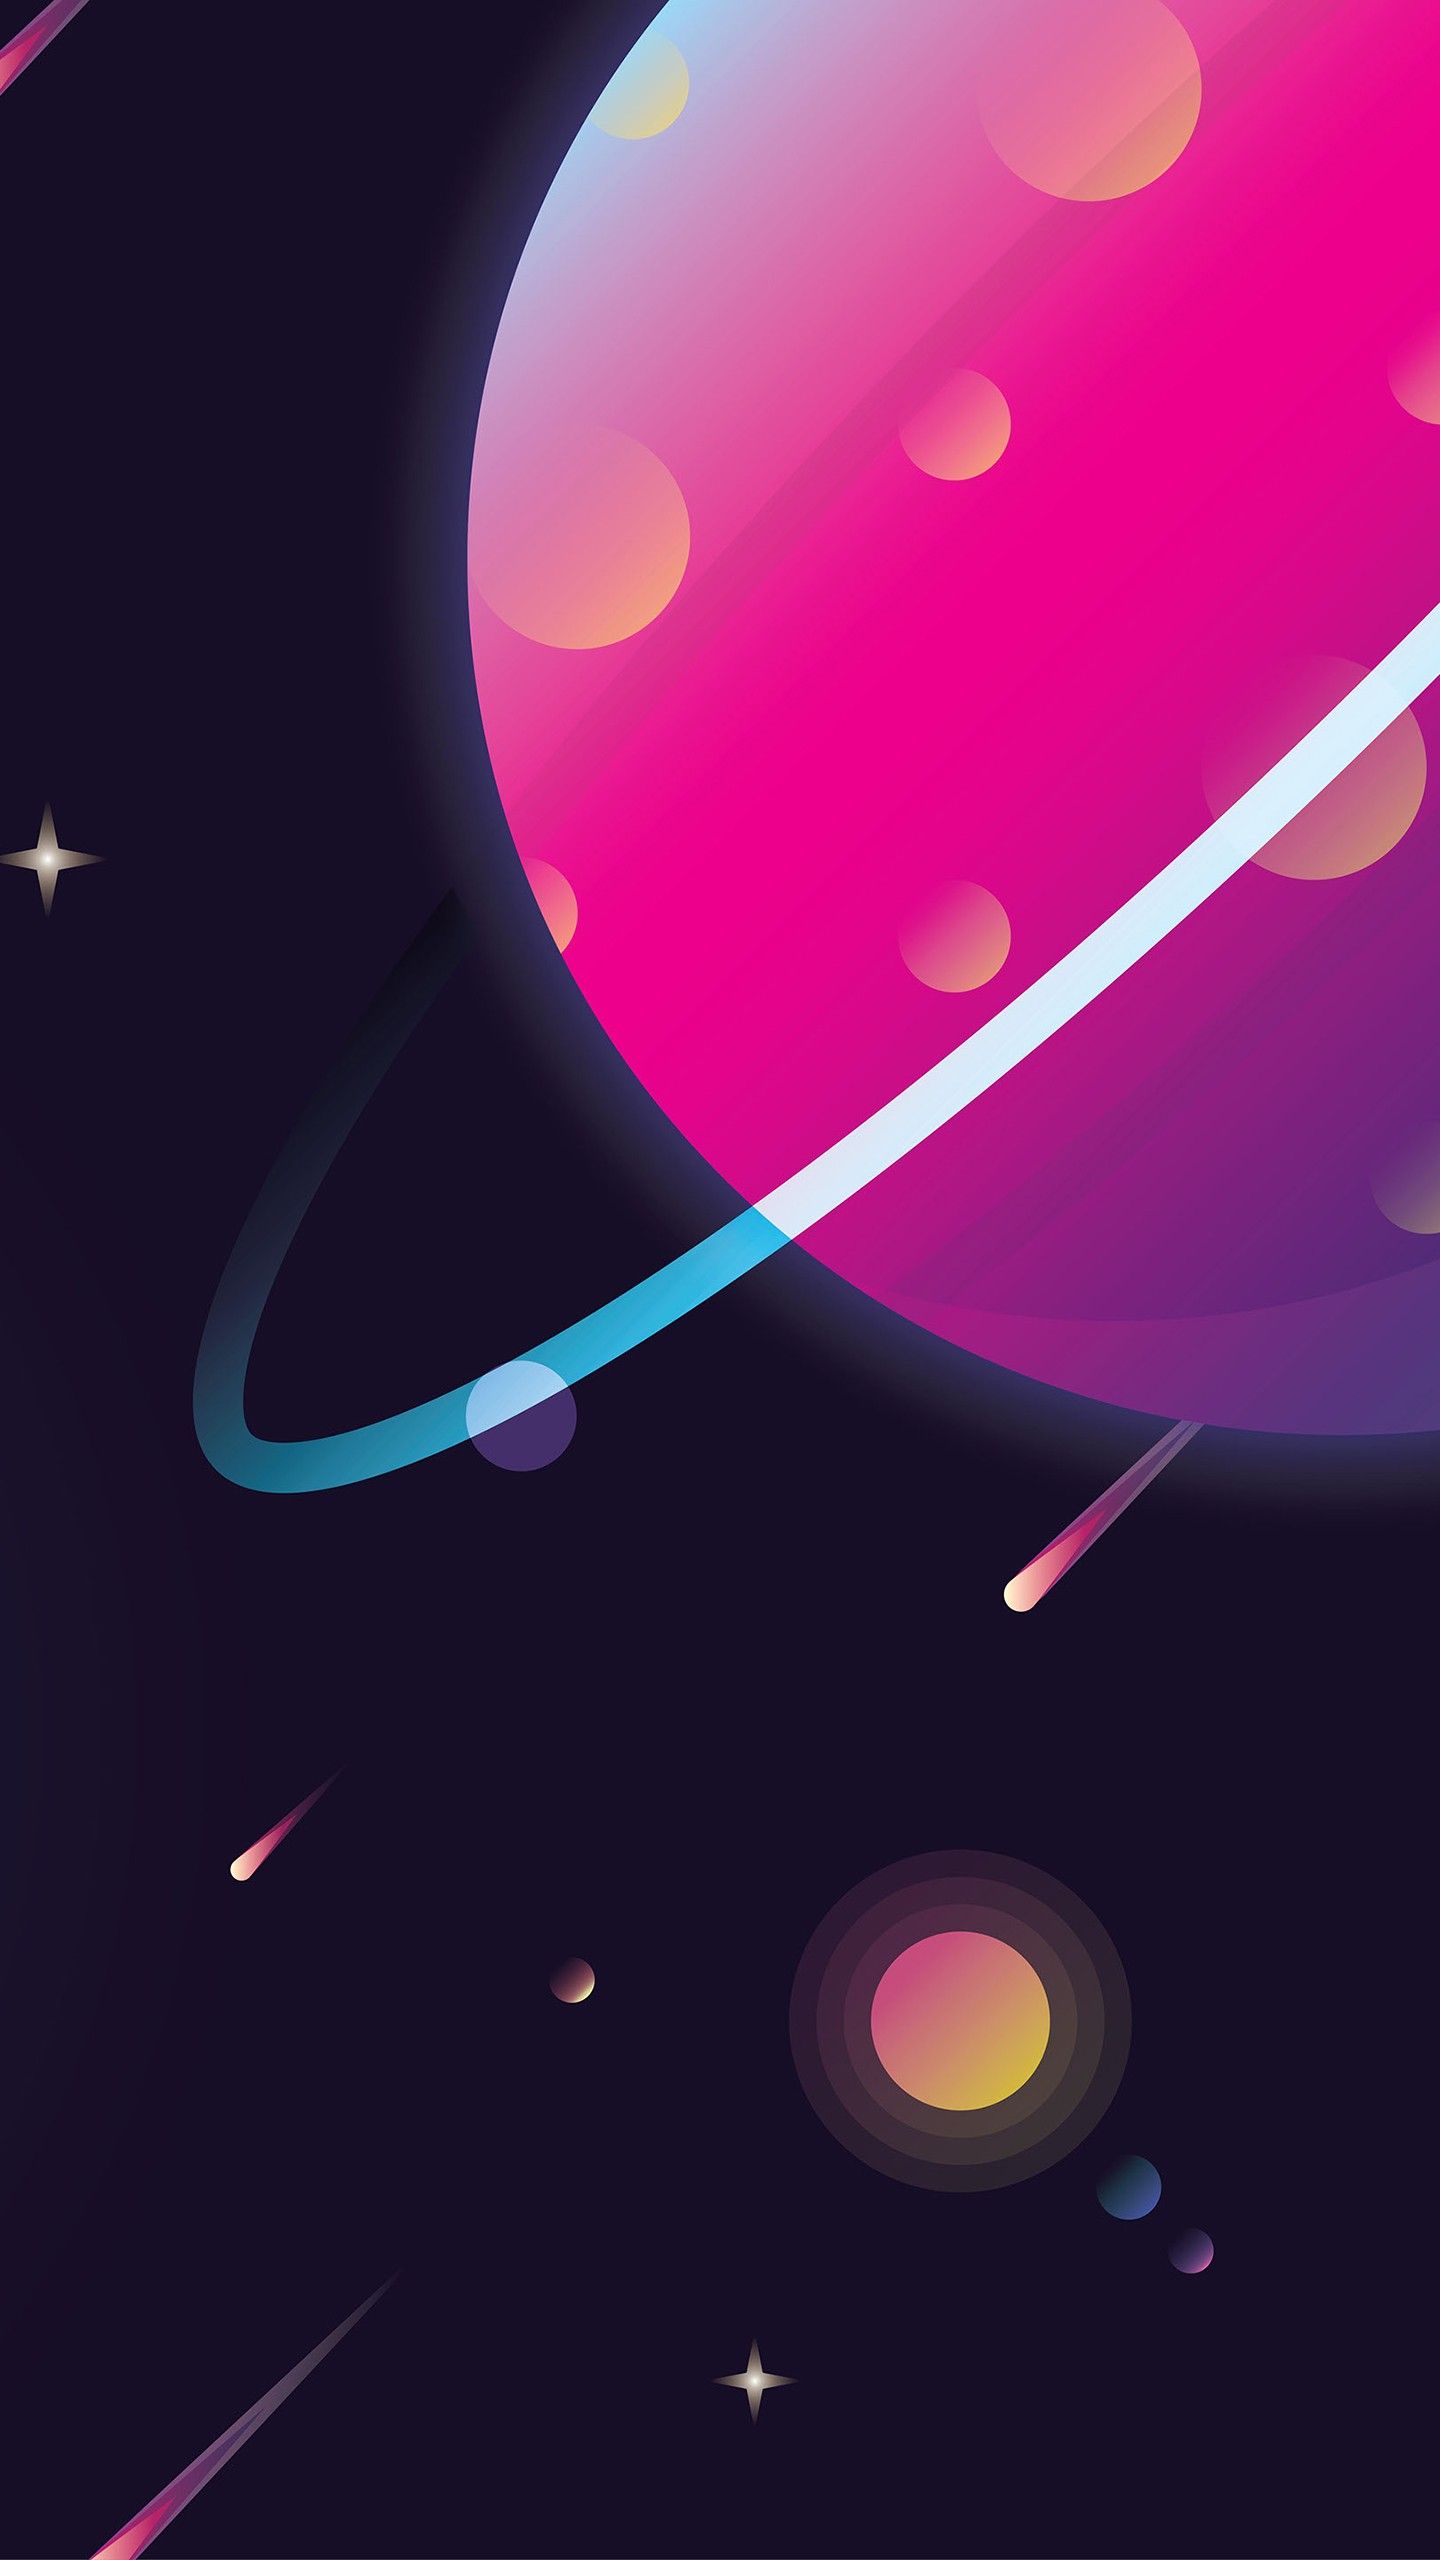 Solar System Planets Illustration 4K Wallpaper